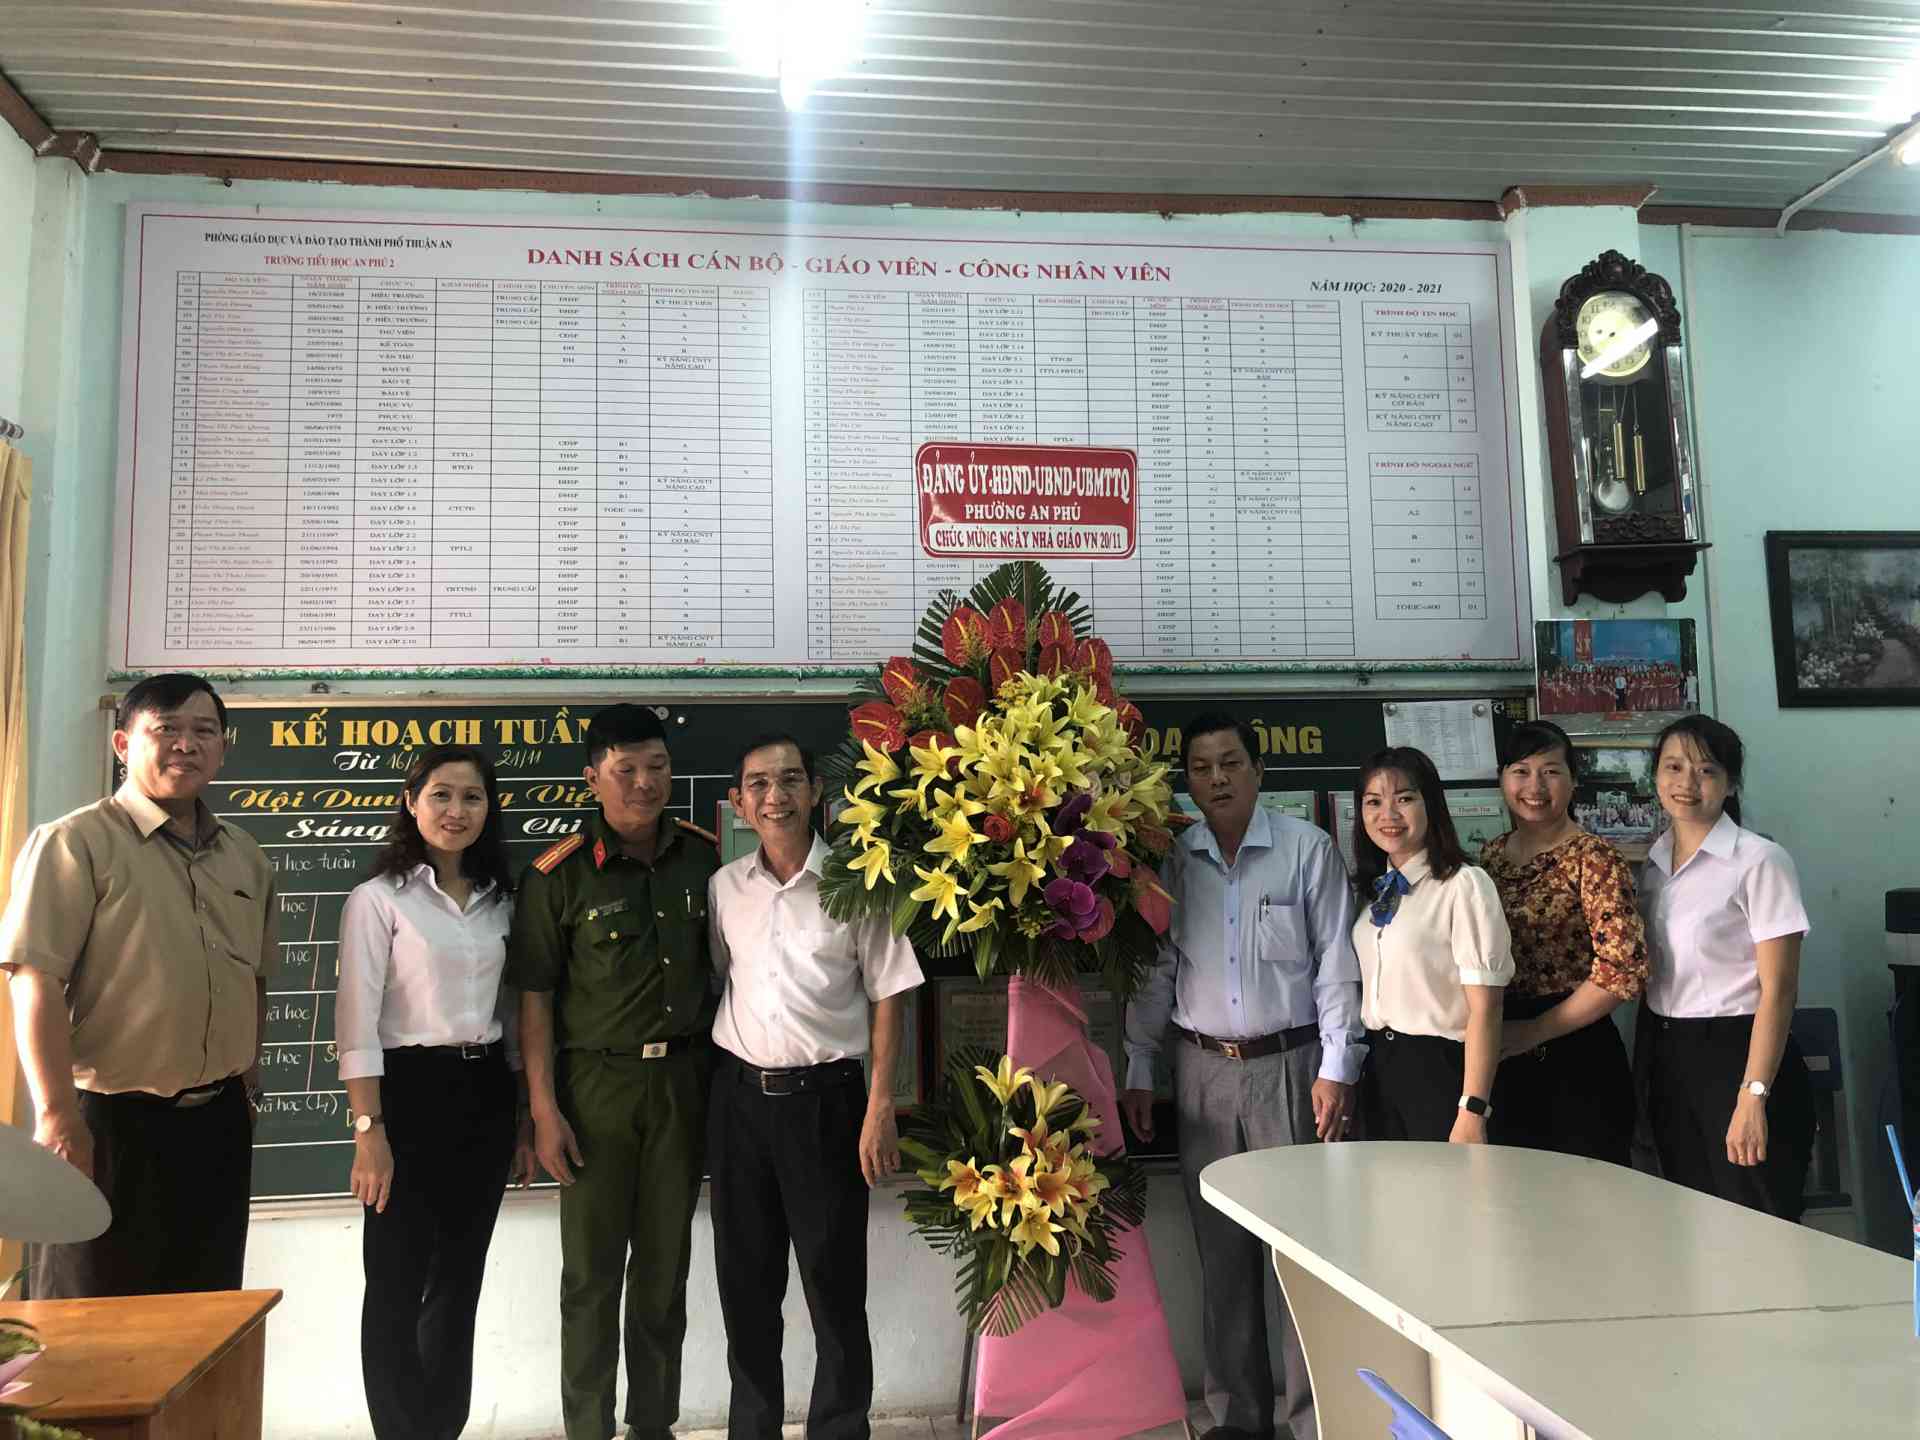 Đảng ủy - HĐND - UBND - UBMTTQ đến Chúc mừng ngày Nhà giáo Việt Nam 20-11